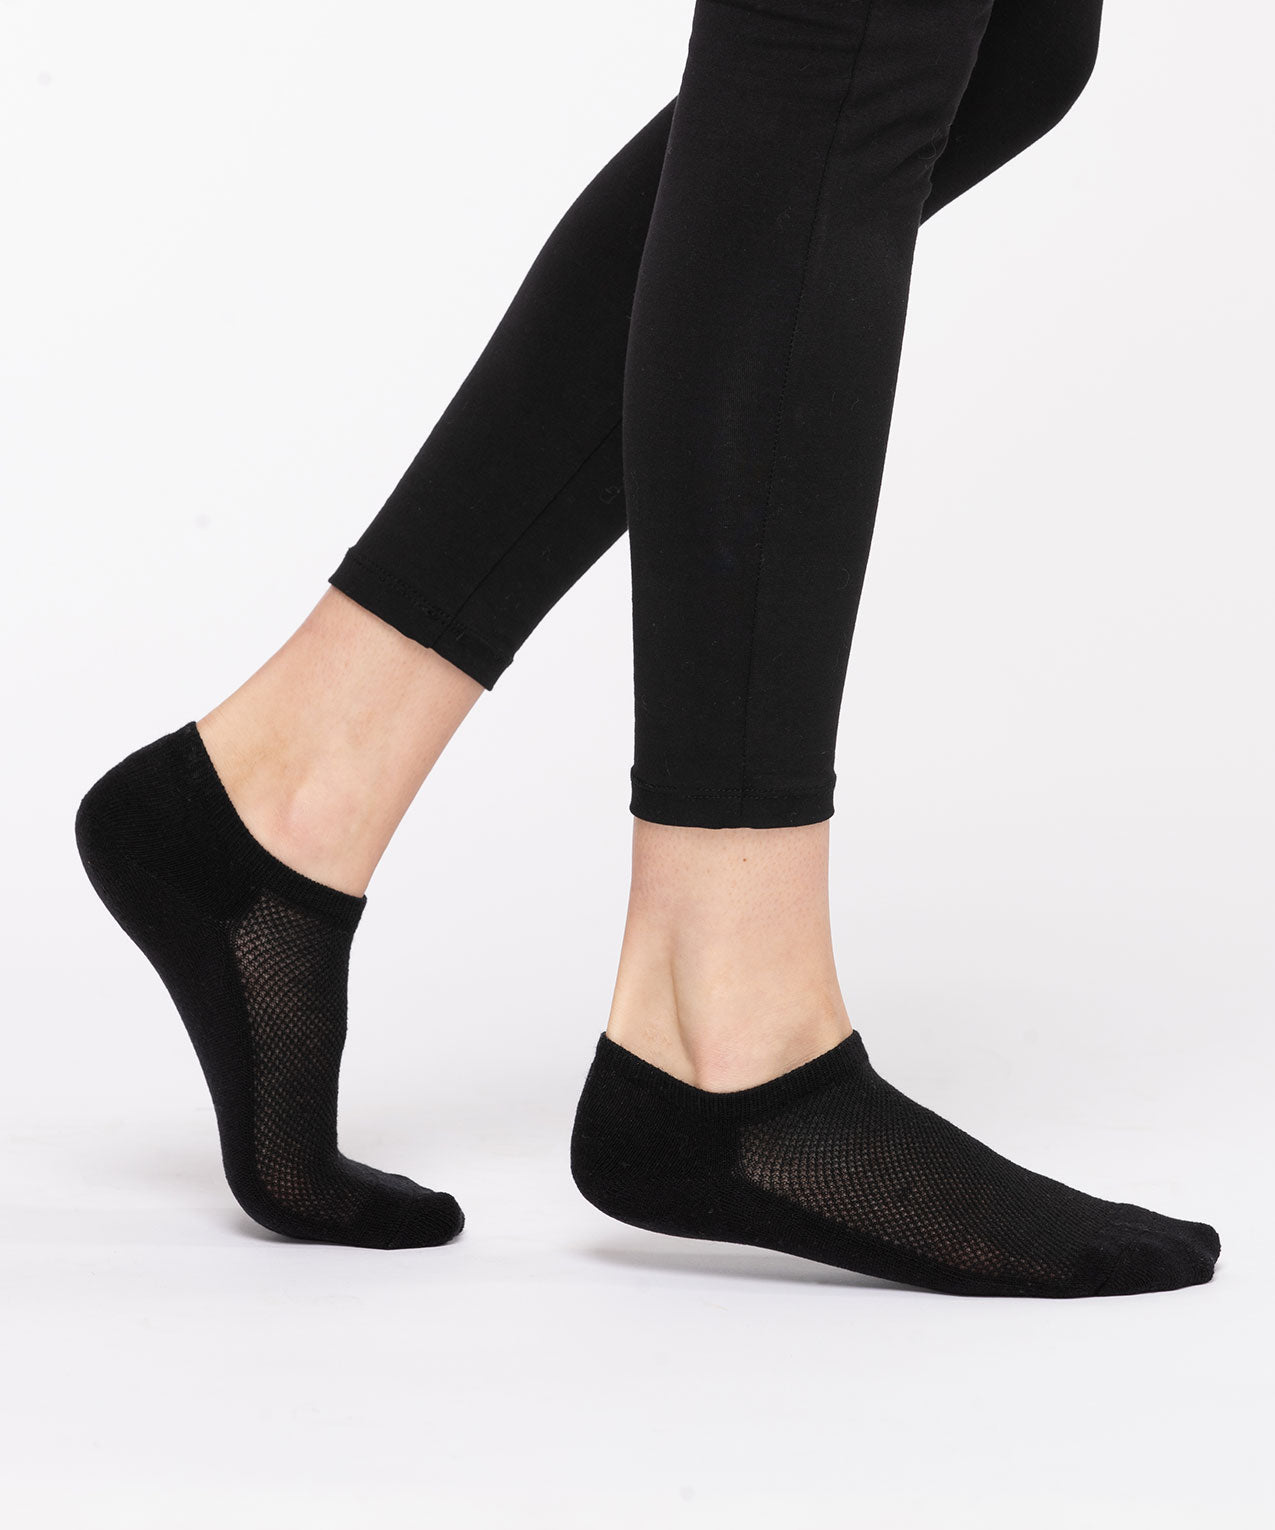 Black Ankle Socks For Women - Summer